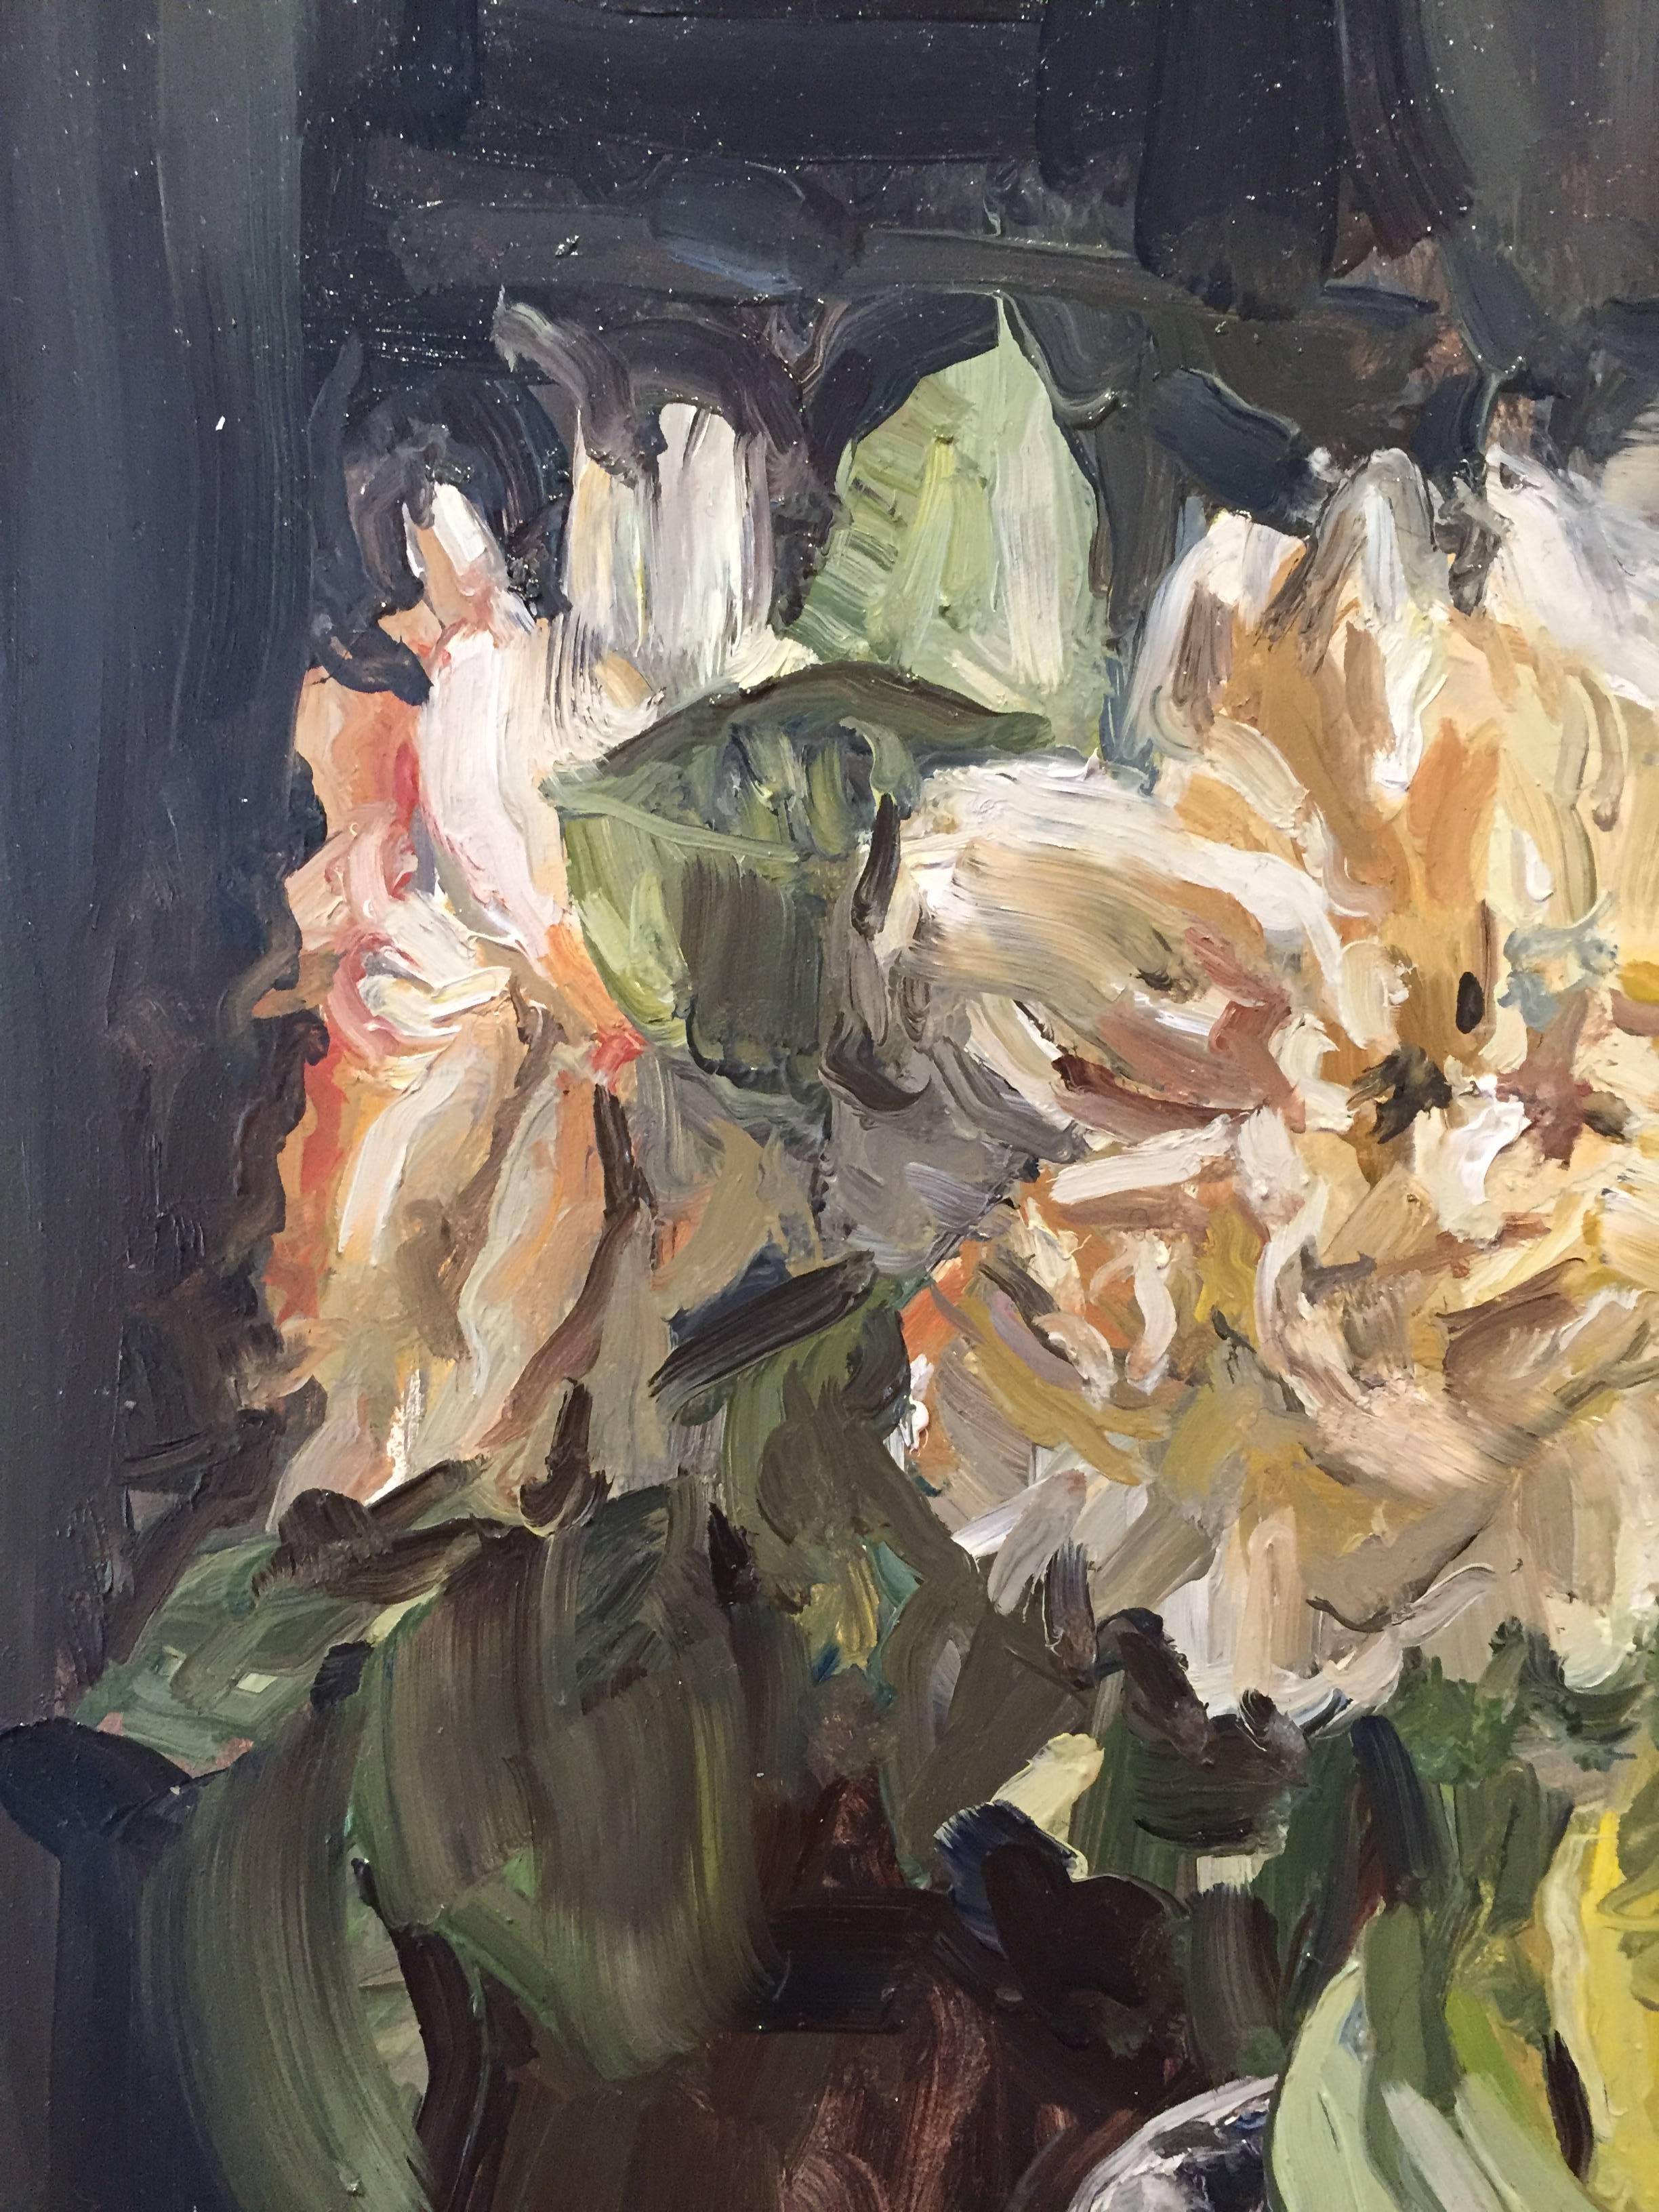 White Roses in Glass - Black Still-Life Painting by Rachel Personett